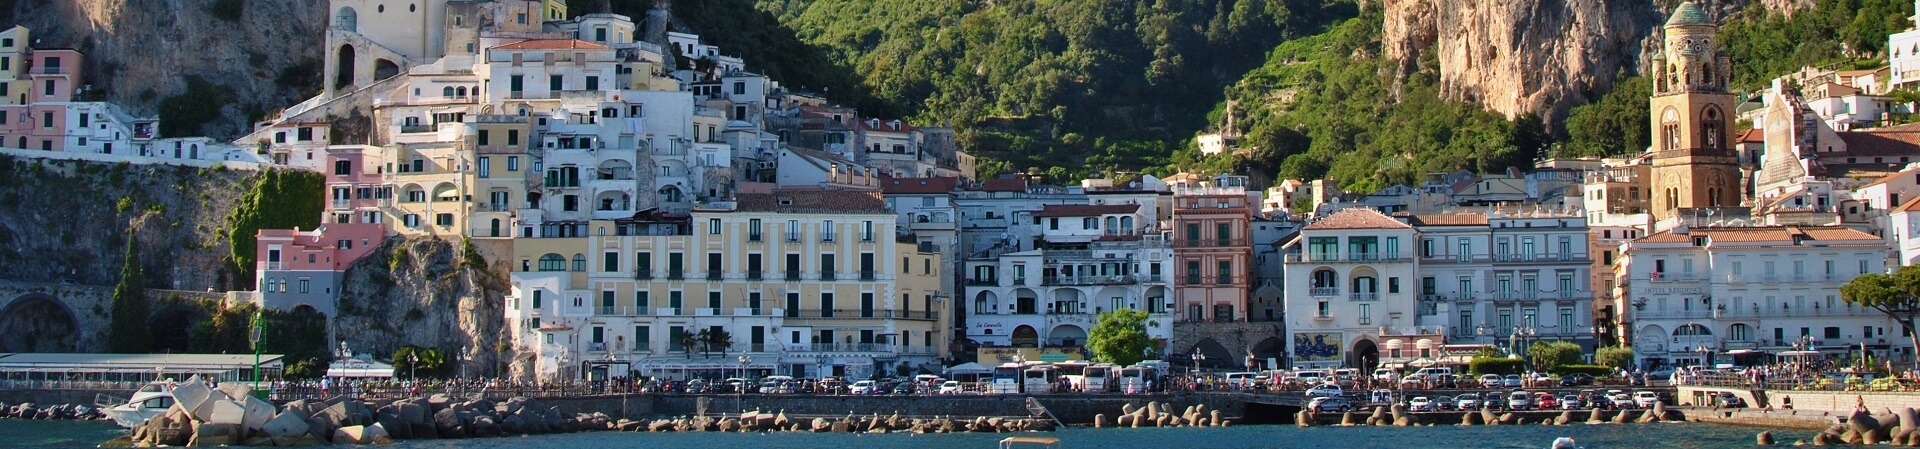 Is Sorrento better than Amalfi?